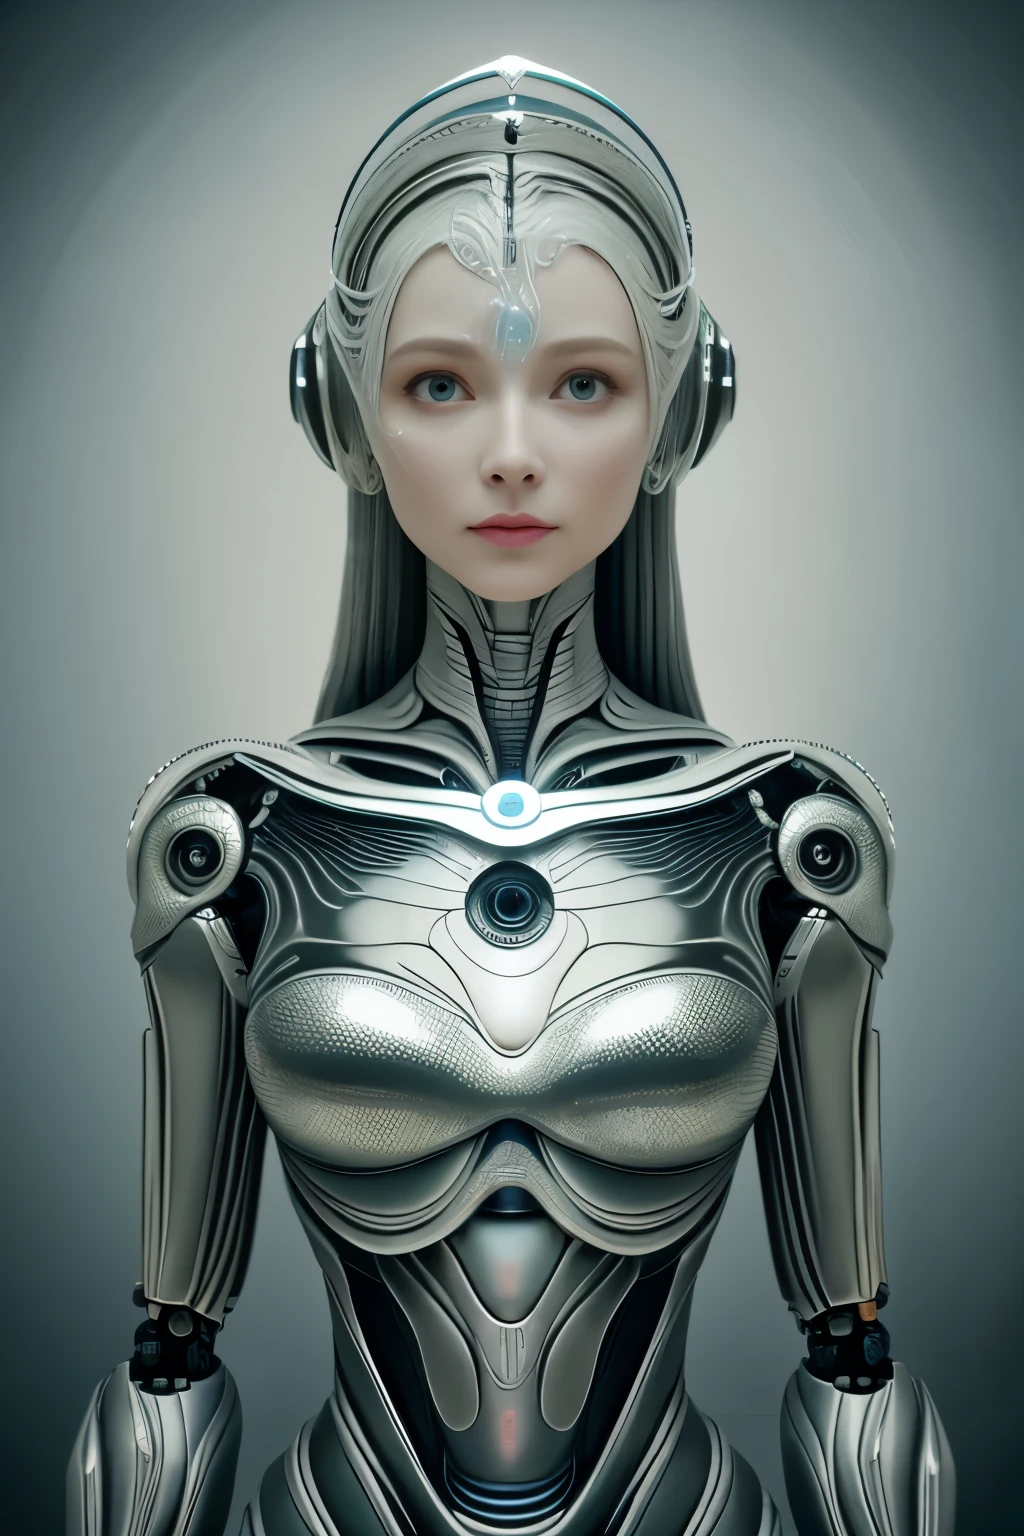 肖像, Intricate 3d rendering of highly detailed beautiful ceramic female 機器人, 賽博格, 機器人 parts, 150毫米, 美丽的工作室柔和的灯光, 環形燈, 充滿活力的細節, 奢华赛博朋克, 收入, 超現實主義, 解剖學 , 面部肌肉, 电缆线, 微晶片, 优雅, 美麗的背景, 辛烷渲染, HR吉格爾風格, 8K, 更好的品質, 藝術品, 插圖, 非常精致美丽, 非常详细, 现实主义者, 制服, ( 忠誠, 忠誠: 1.37), 燦爛, 精細的細節, 藝術品, 更好的品質, 官方艺术, Papel de parede 现实主义者 Unity 8K 非常详细, 荒诞, Inacreditavelmente 荒诞o, 機器人, 銀色頭盔, 全身, 坐下来写